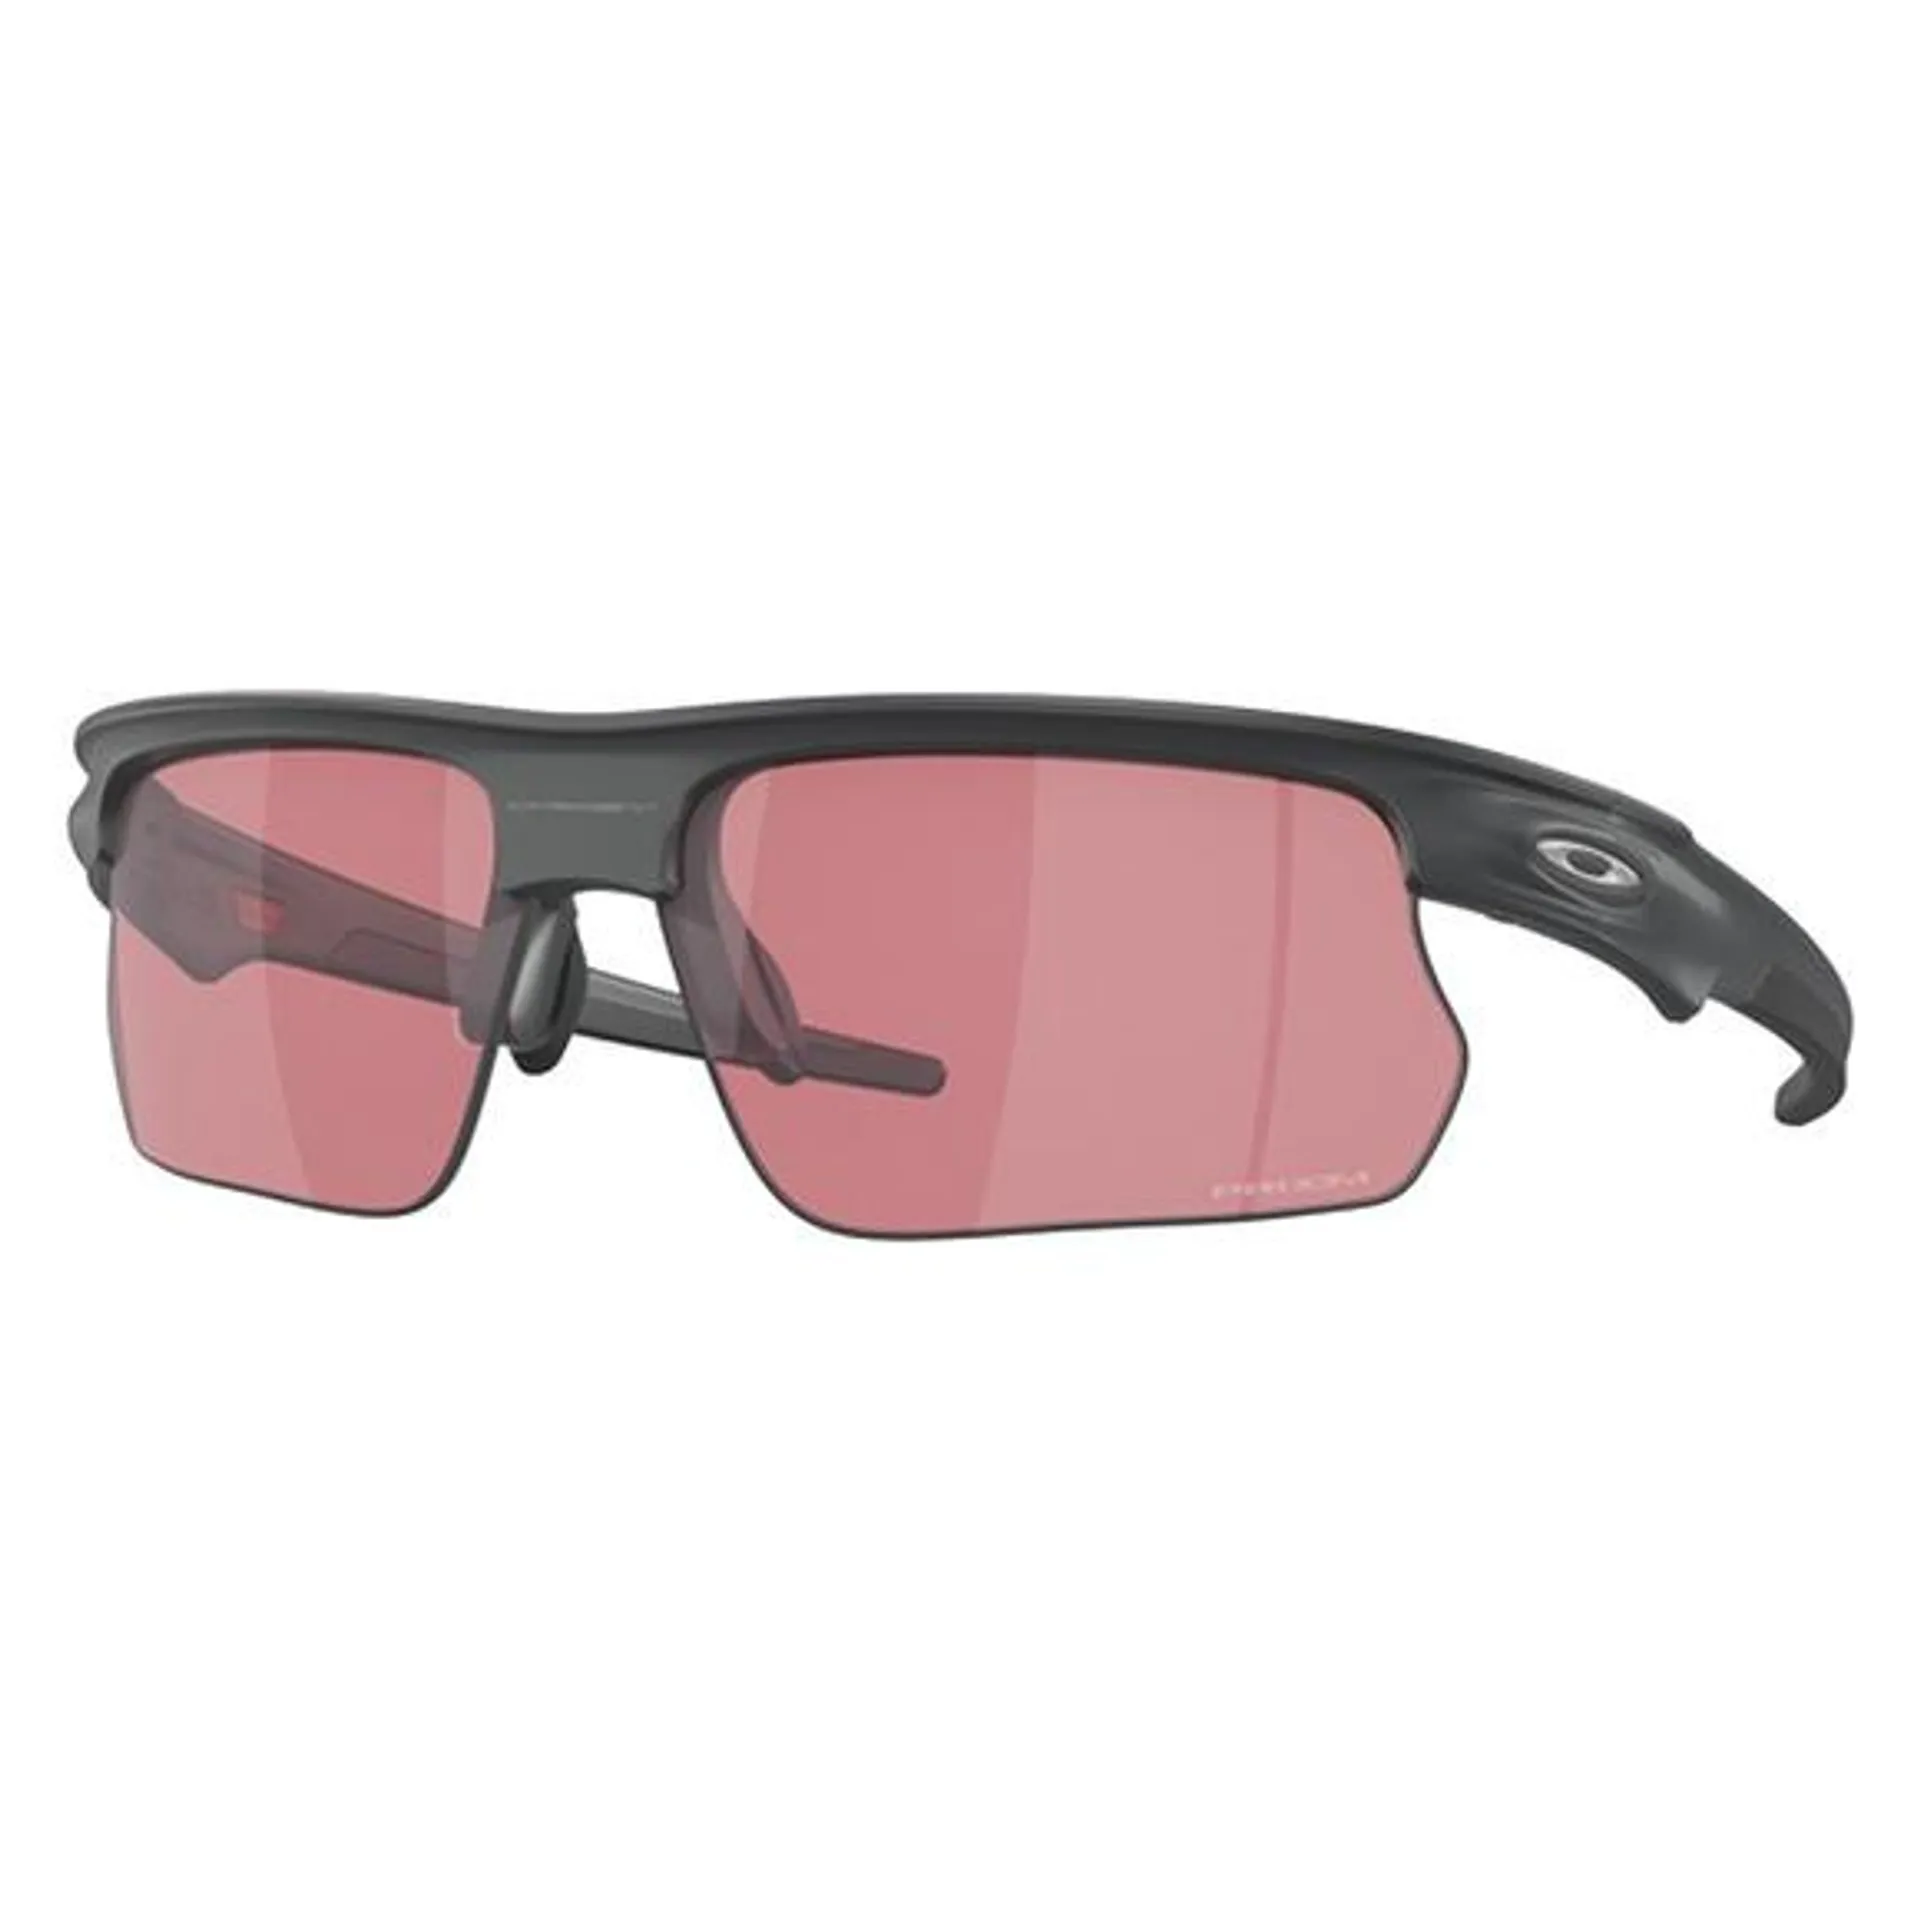 BiSphaera Prizm Dark Golf - Adult Sunglasses